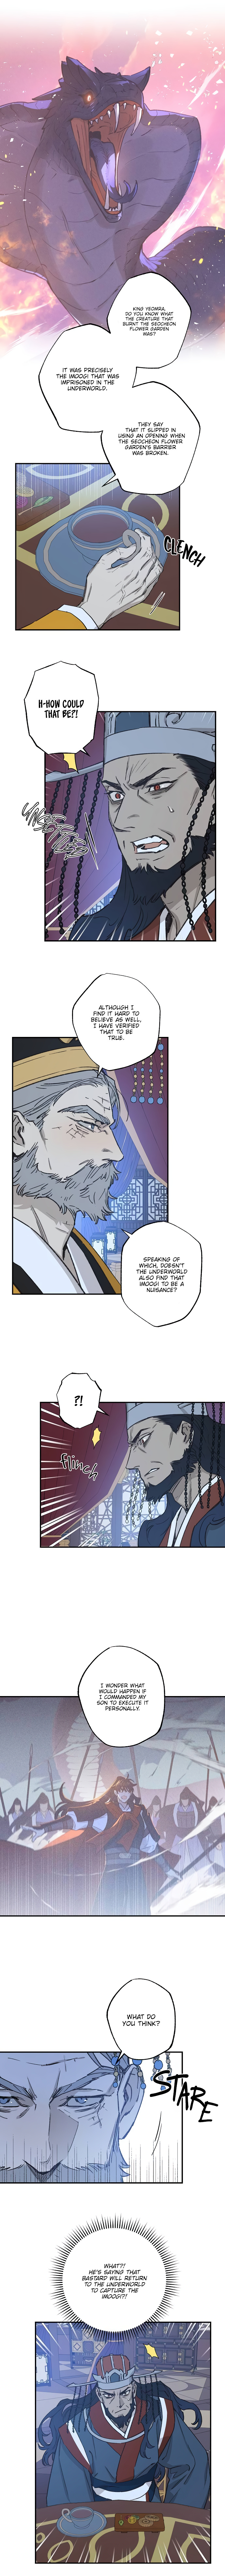 Onsaemiro - Page 2